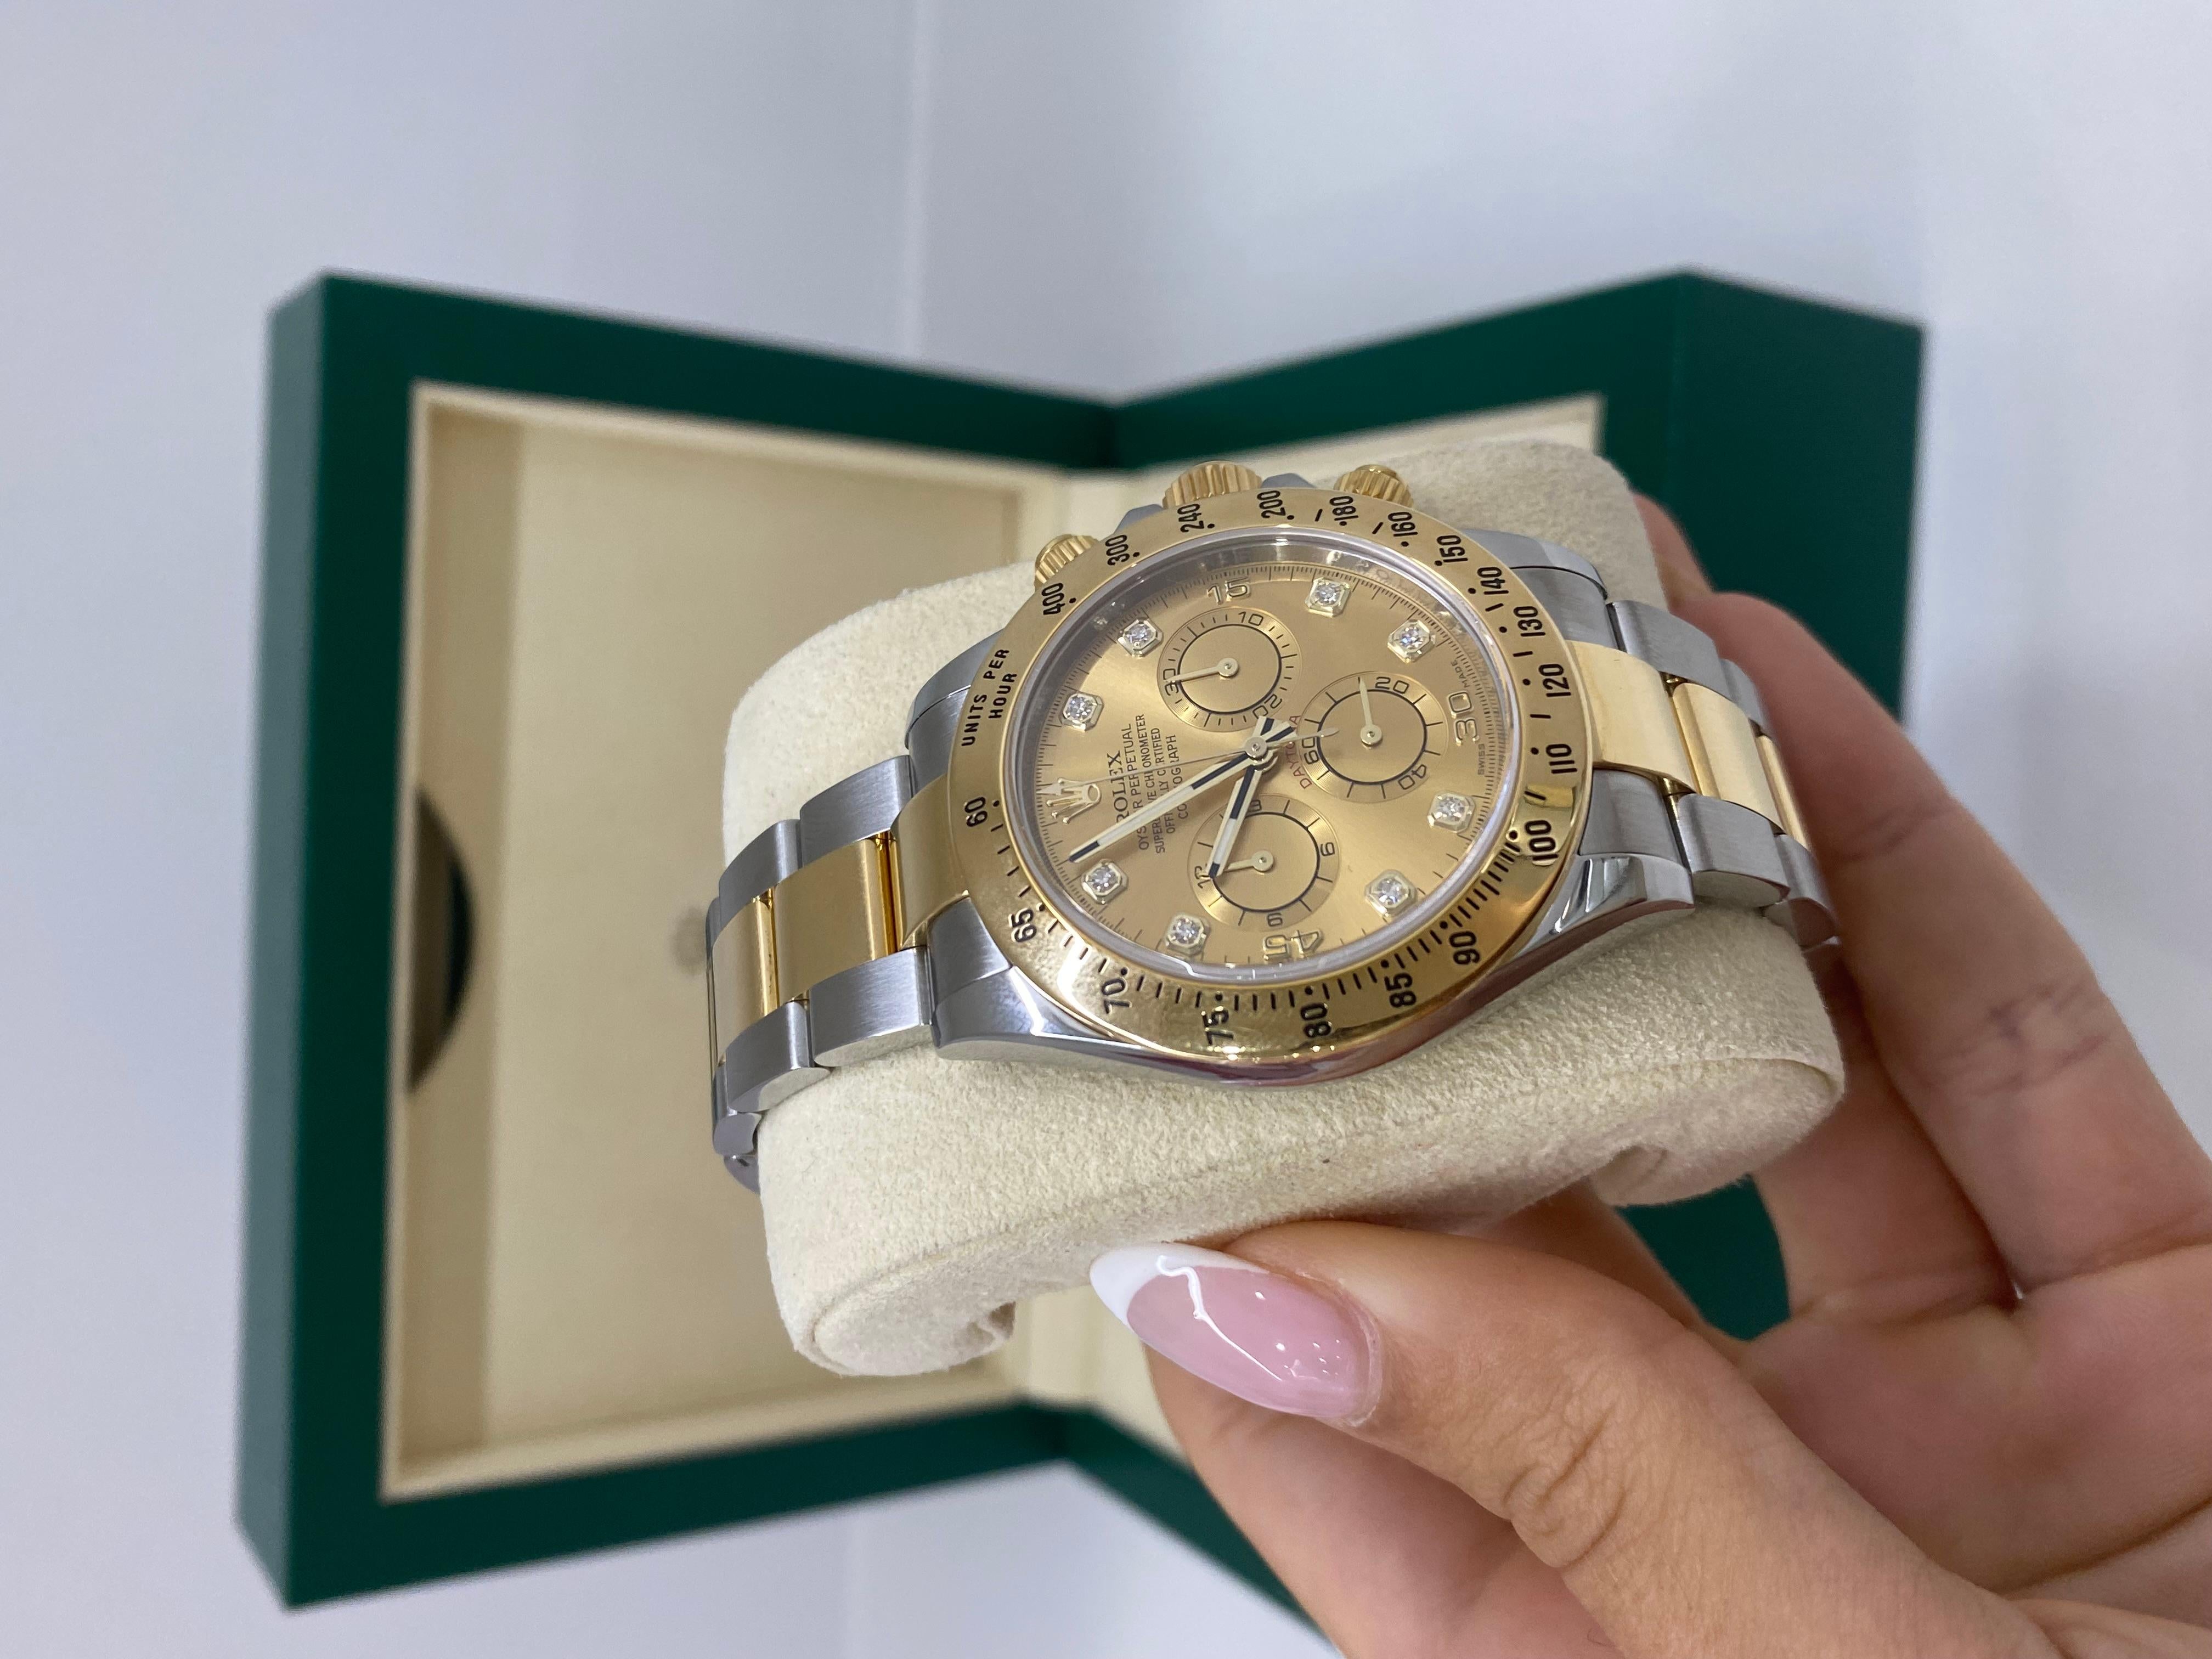 Modell: Cosmograph Daytona Oystersteel & Gelbgold Uhr

40 mm 

Zustand: Ausgezeichneter gebrauchter Condit 

Jahr: 2014

Wird geliefert mit: Box & Papiere